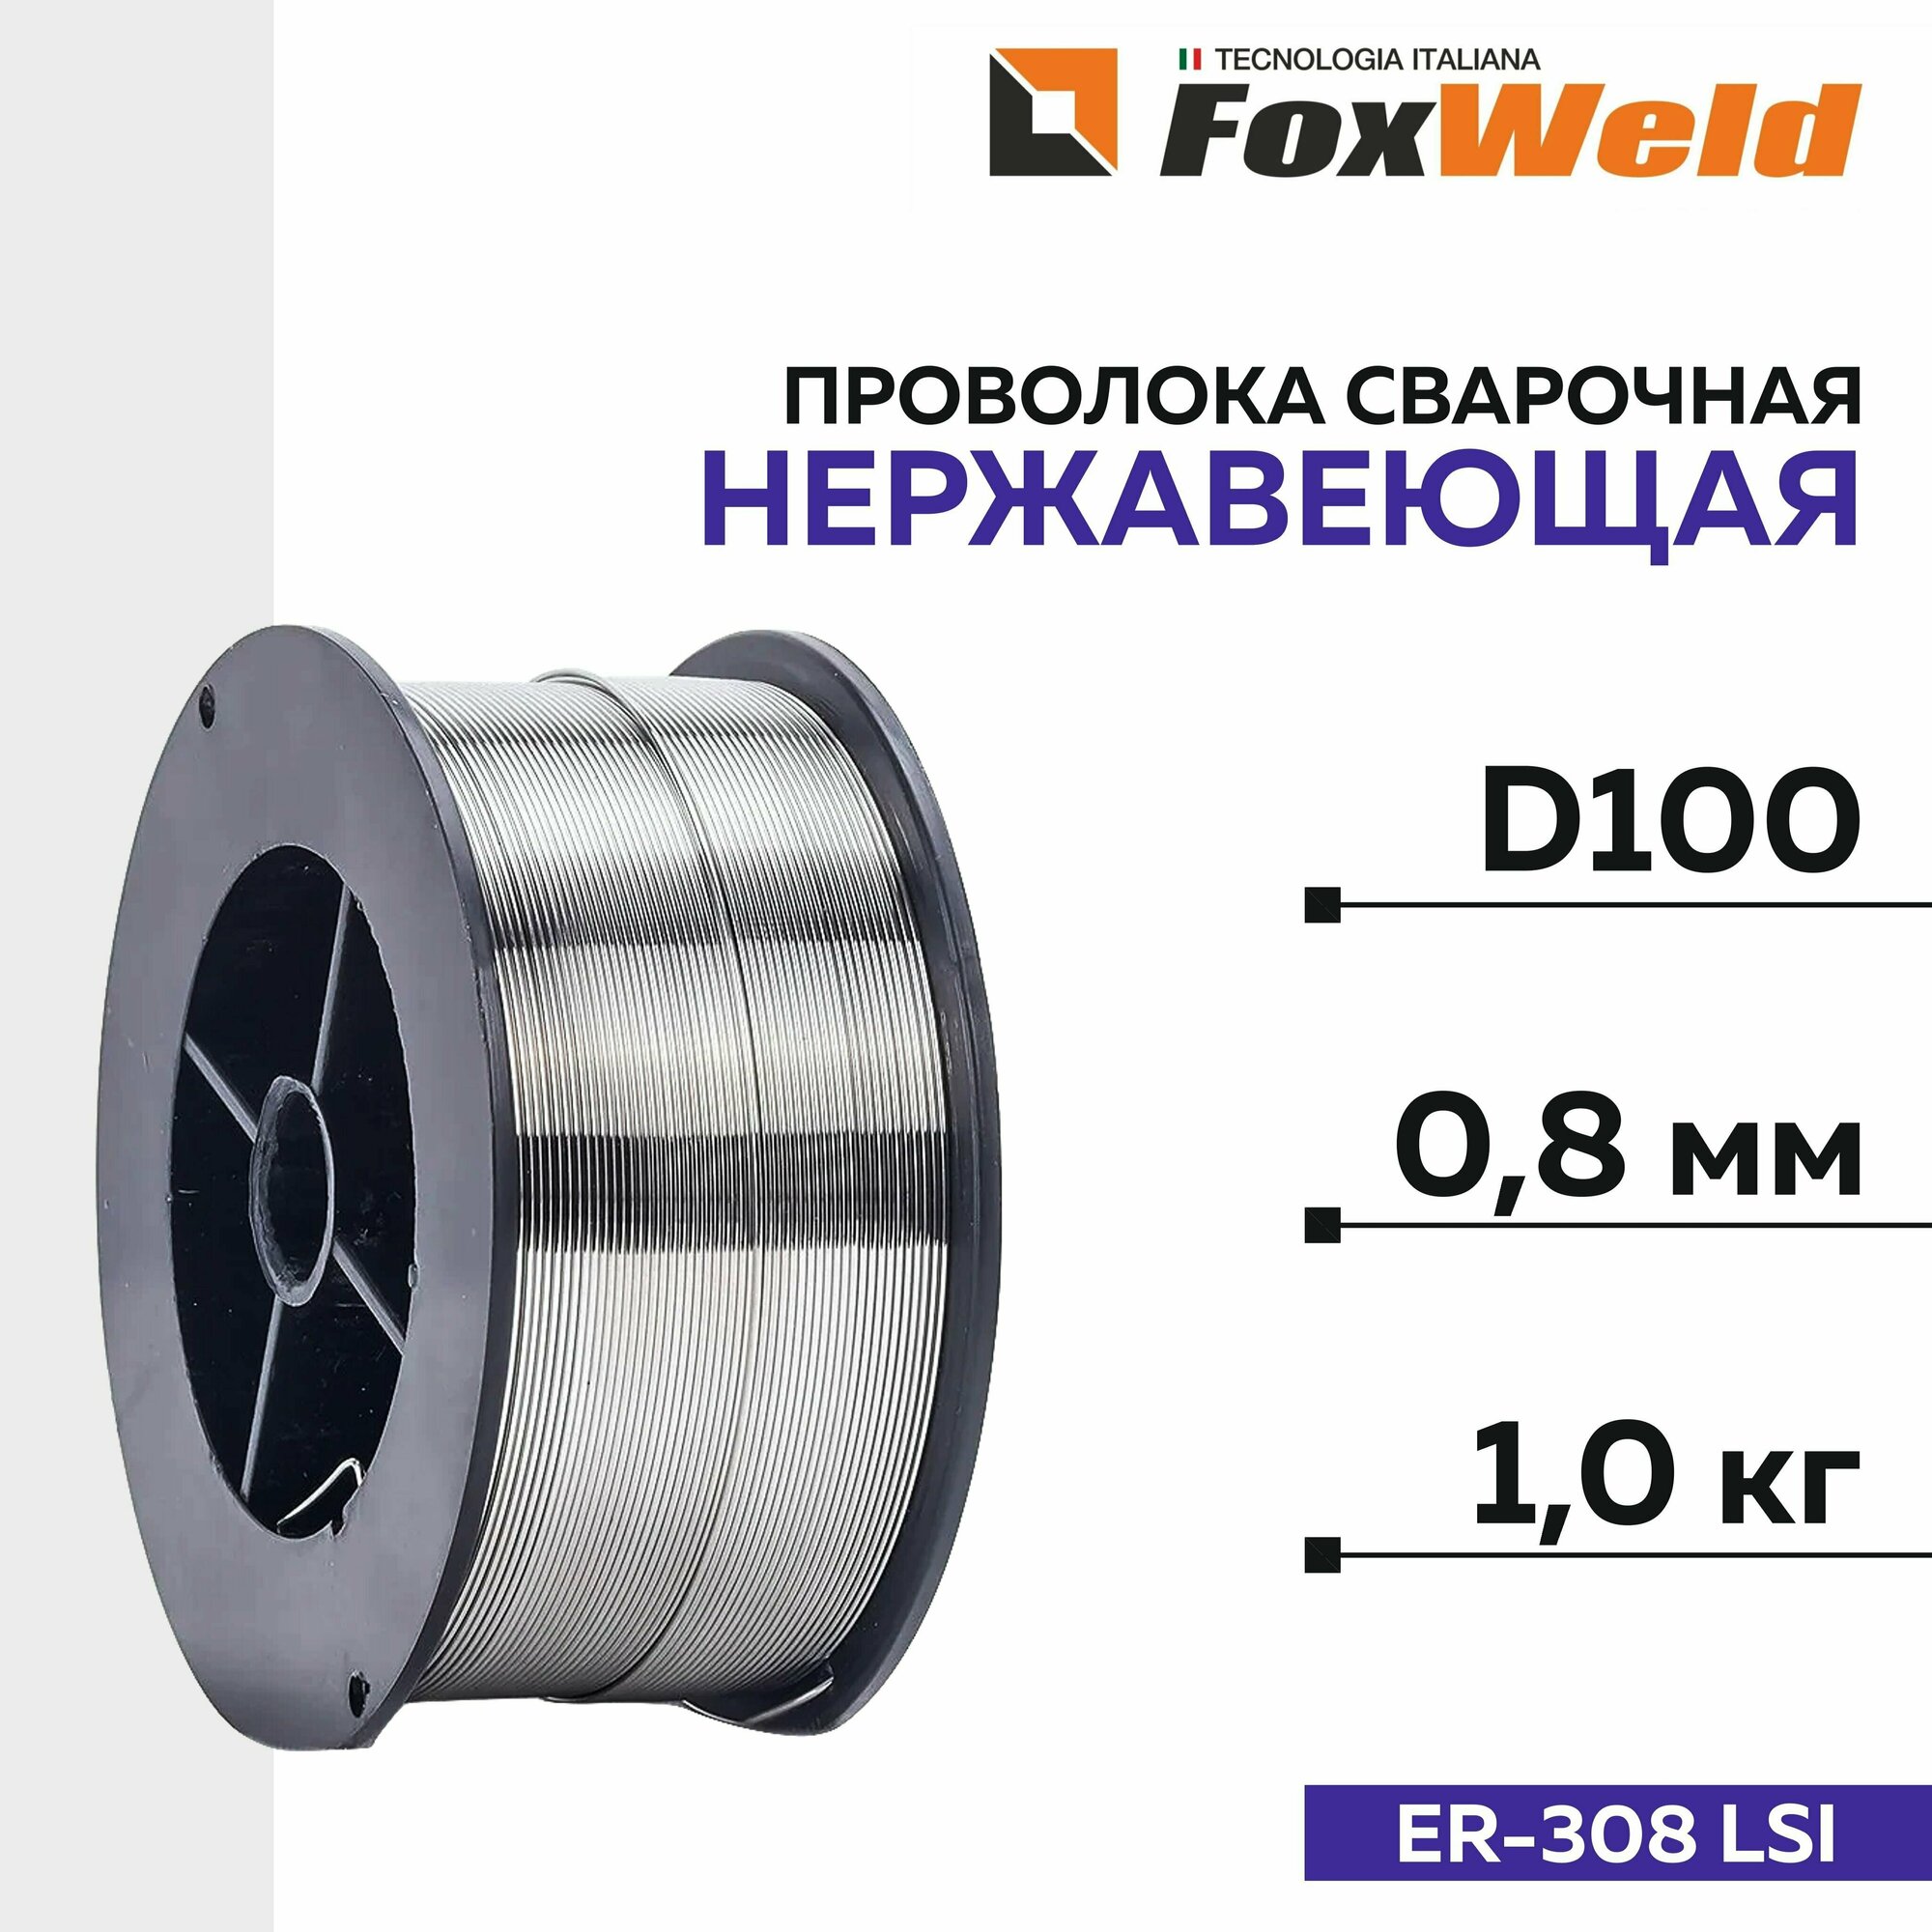 Проволока сварочная нержавеющая FoxWeld D-100, ER-308 LSI, д. 0,8 мм; 1 кг